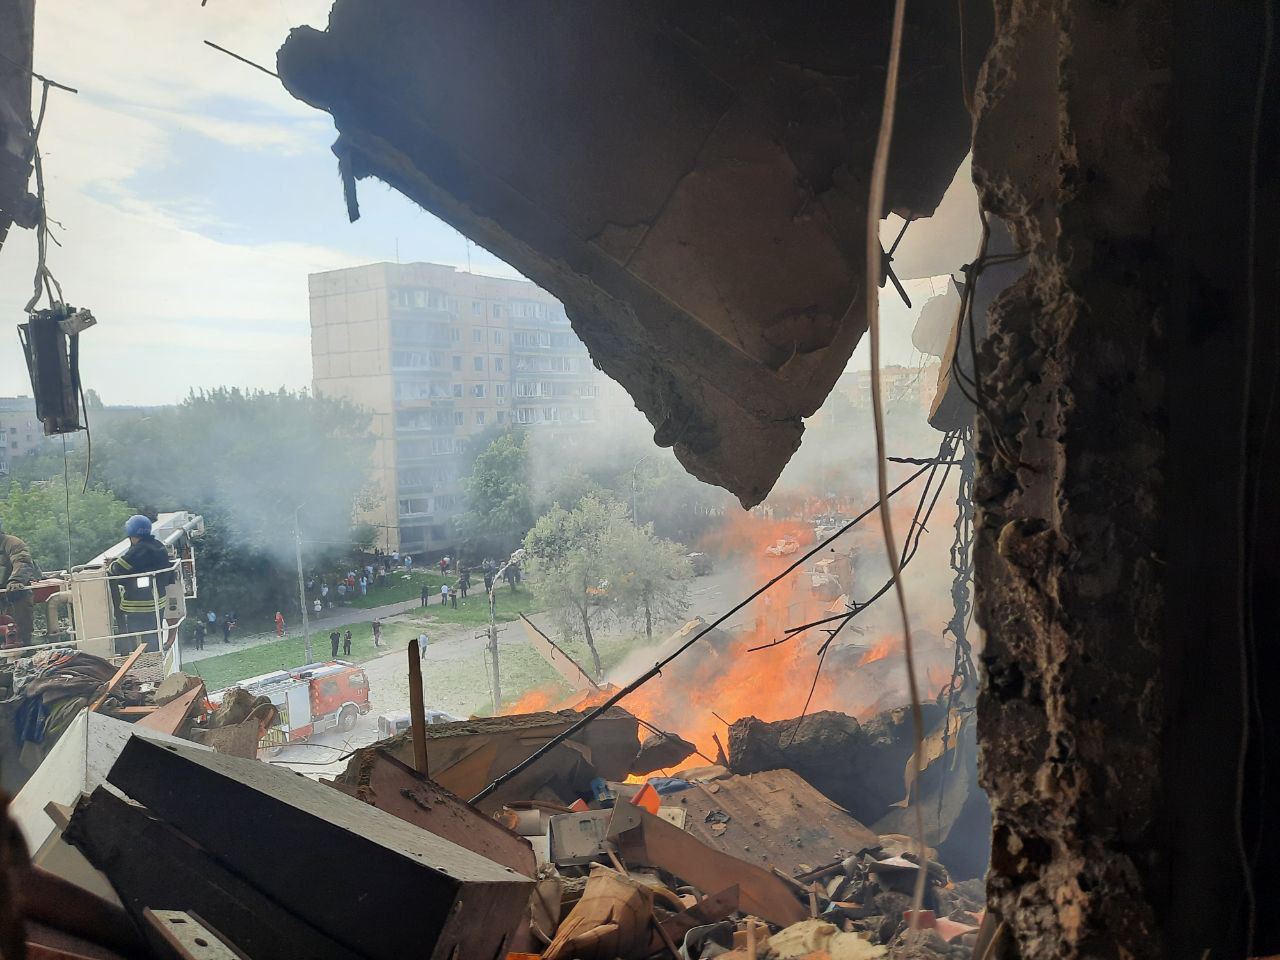 В Кривом Роге известно уже о двух погибших, по меньшей мере, 20 пострадавших, под завалами может быть пять-семь человек, - глава МВД Клименко в эфире телемарафона